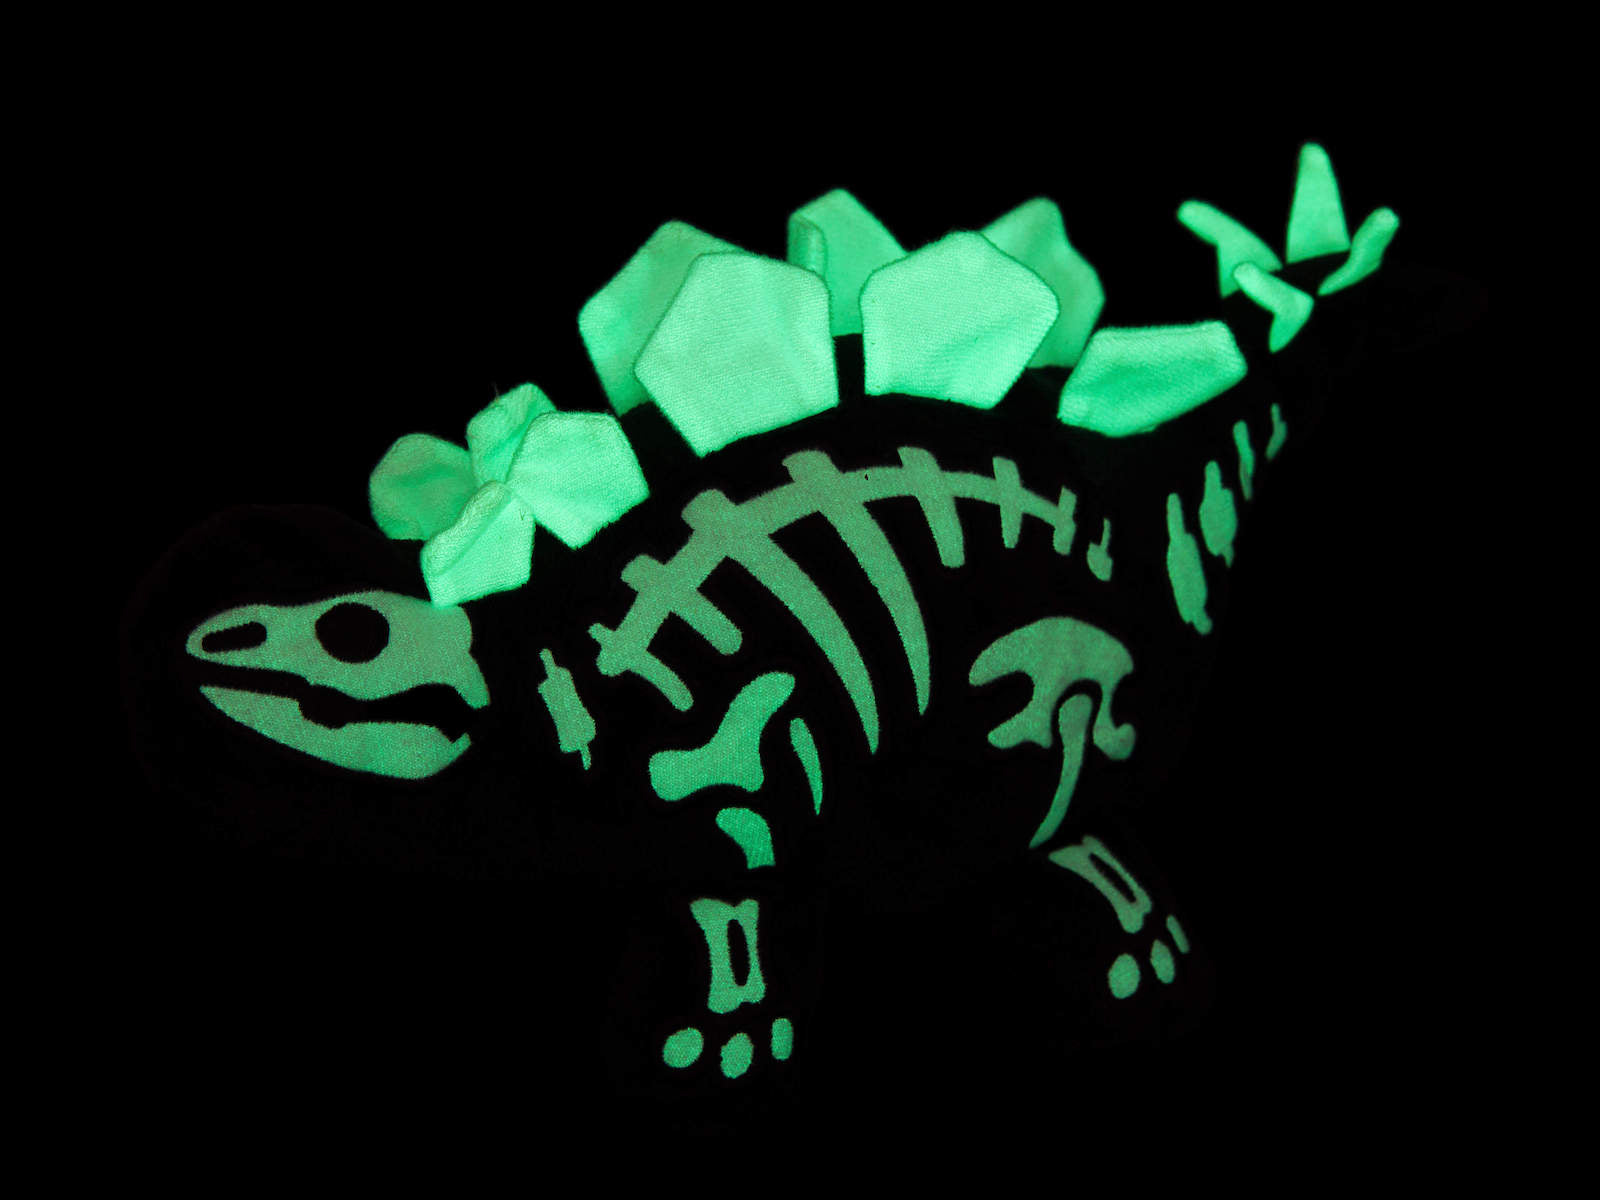 Stegosaurus DinoGlow glowing in the dark skeleton